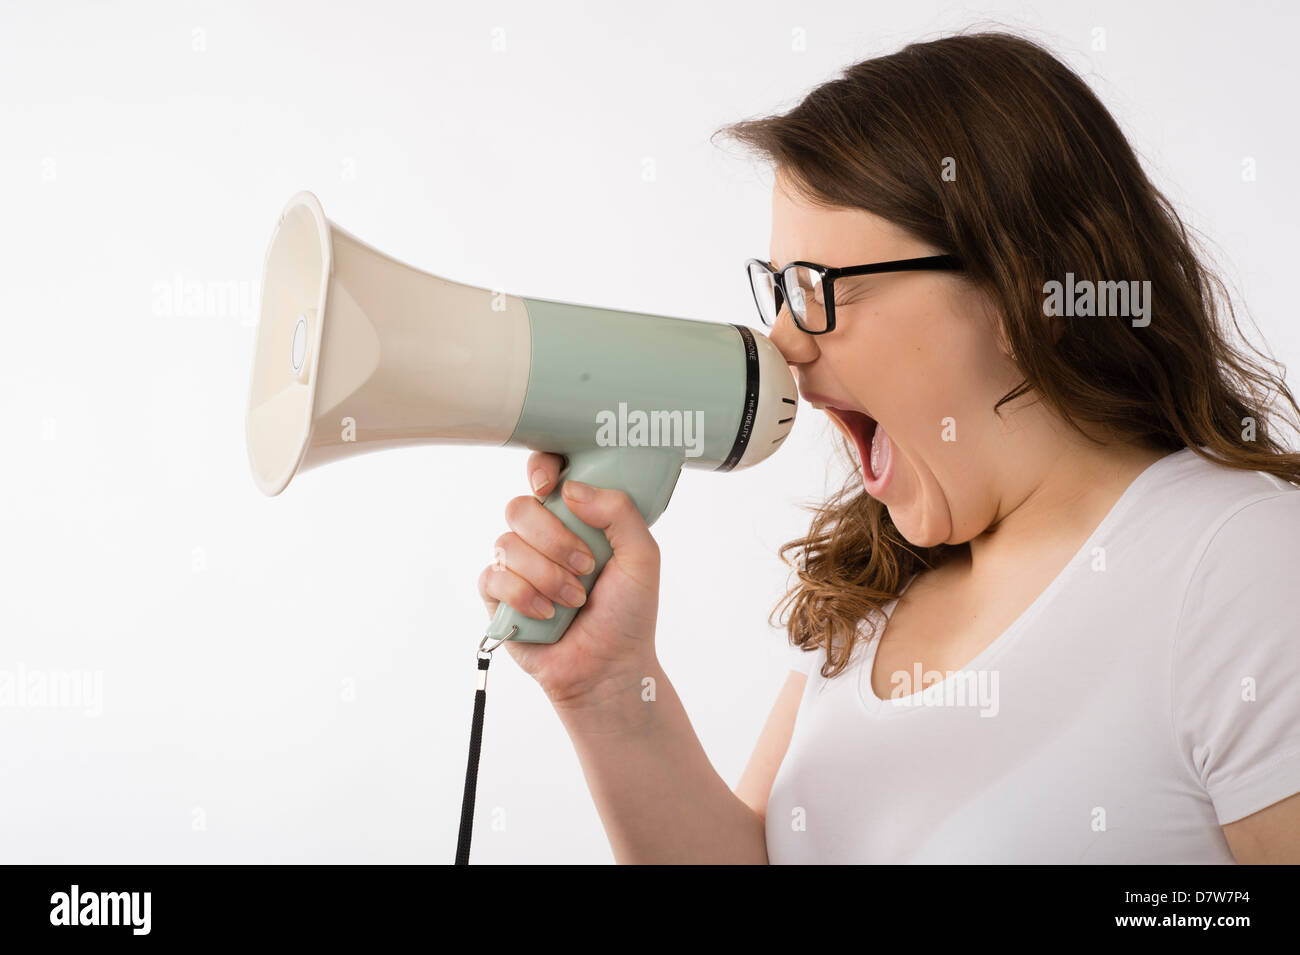 Una joven morenita adolescente chica caucásica gritando en un megáfono con gafas de cuerno de toro gritando gritando uk Foto de stock